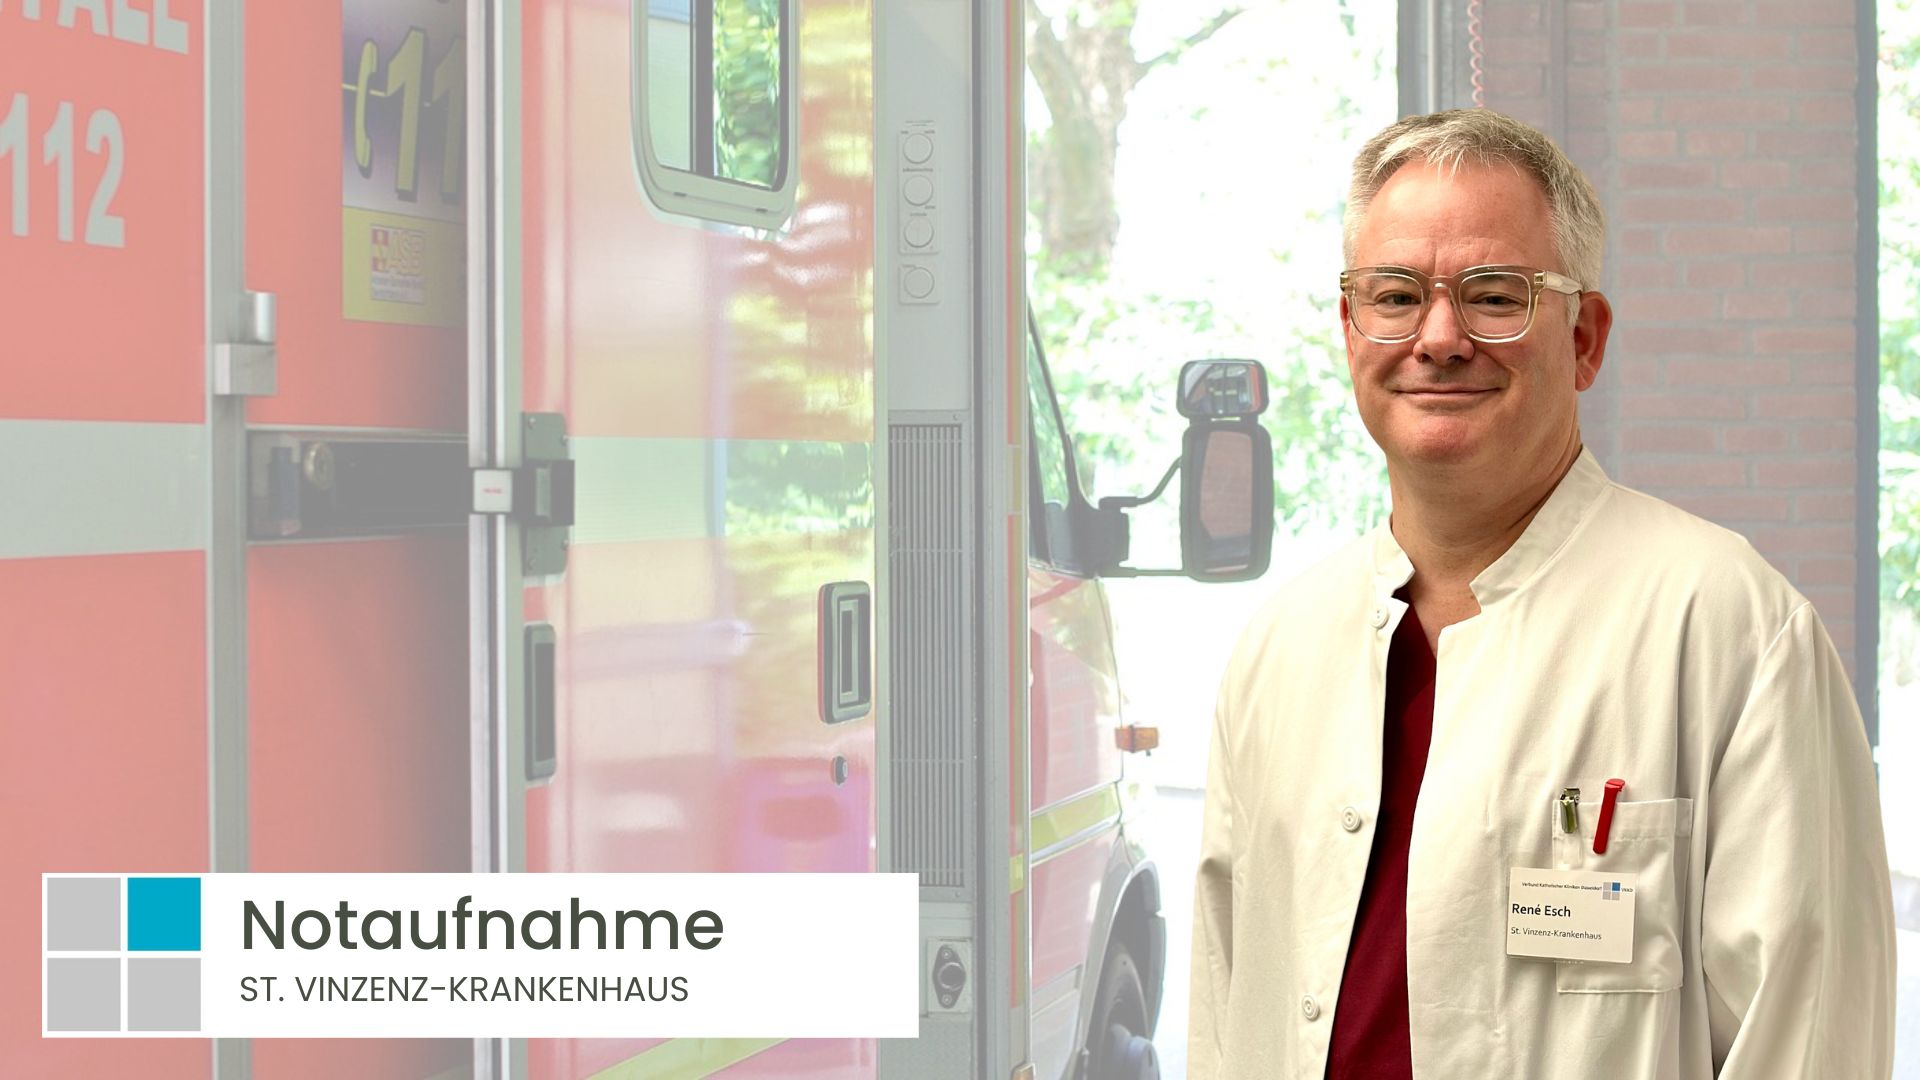 René Esch steht als Leiter der Notaufnahme St. Vinzenz-Krankenhaus vor einem Rettungswagen